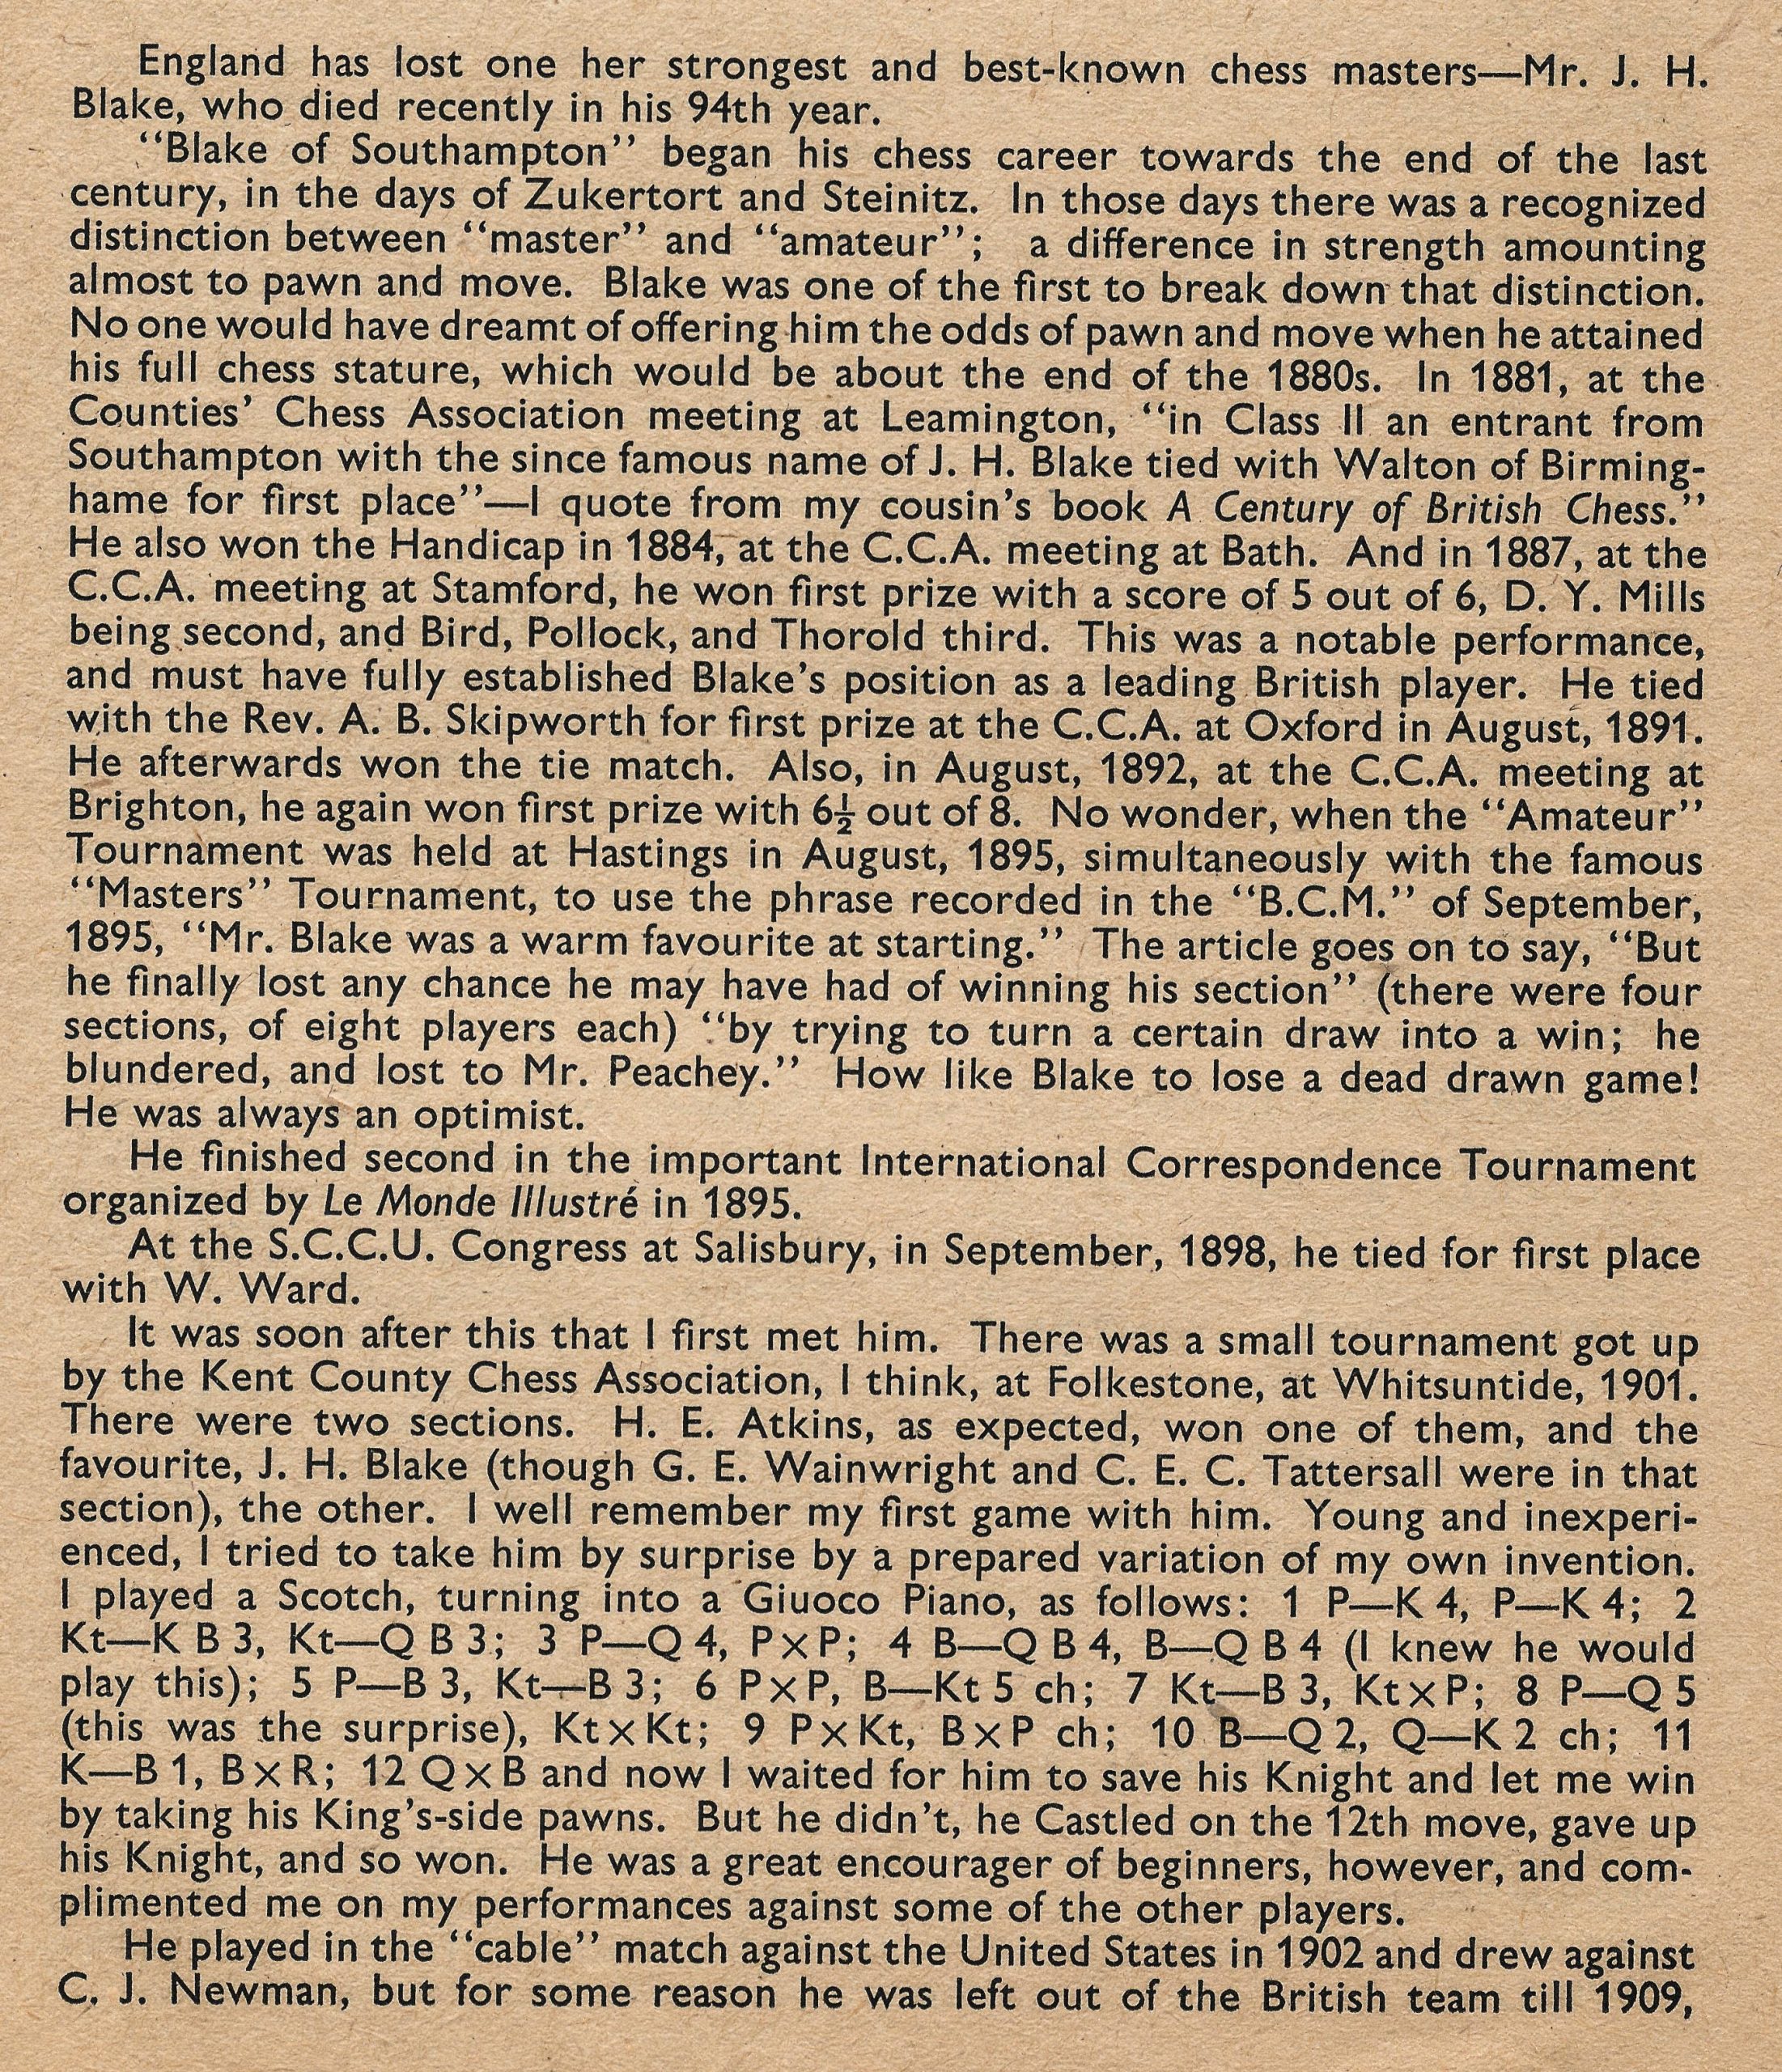 British Chess Magazine, Volume LXXII (72, 1952), Number 2 (February) pp. 44 - 46